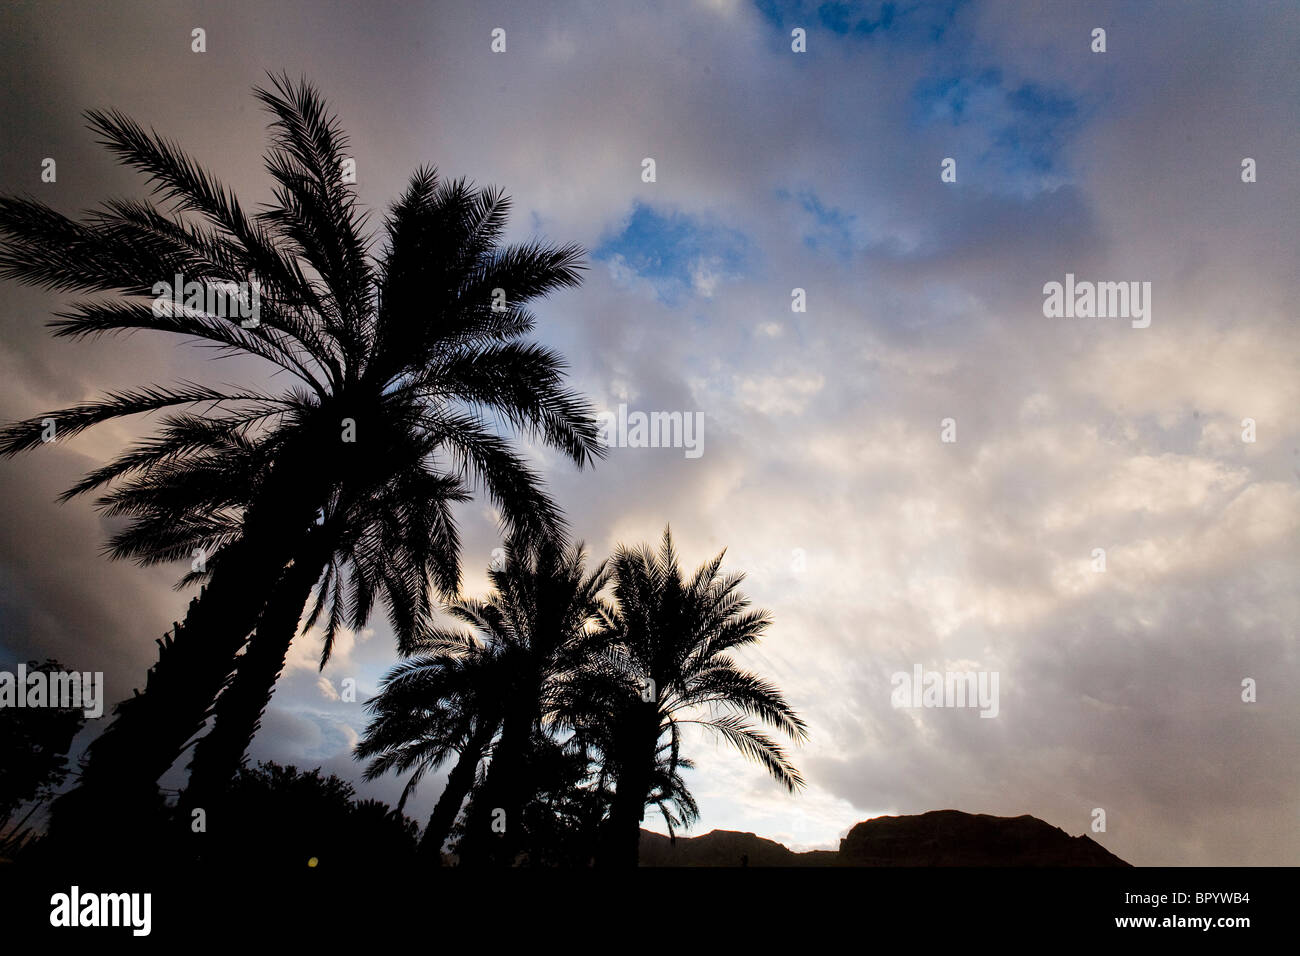 Fotografia del crepuscolo cielo sopra gli alberi di palme nel deserto della Giudea Foto Stock